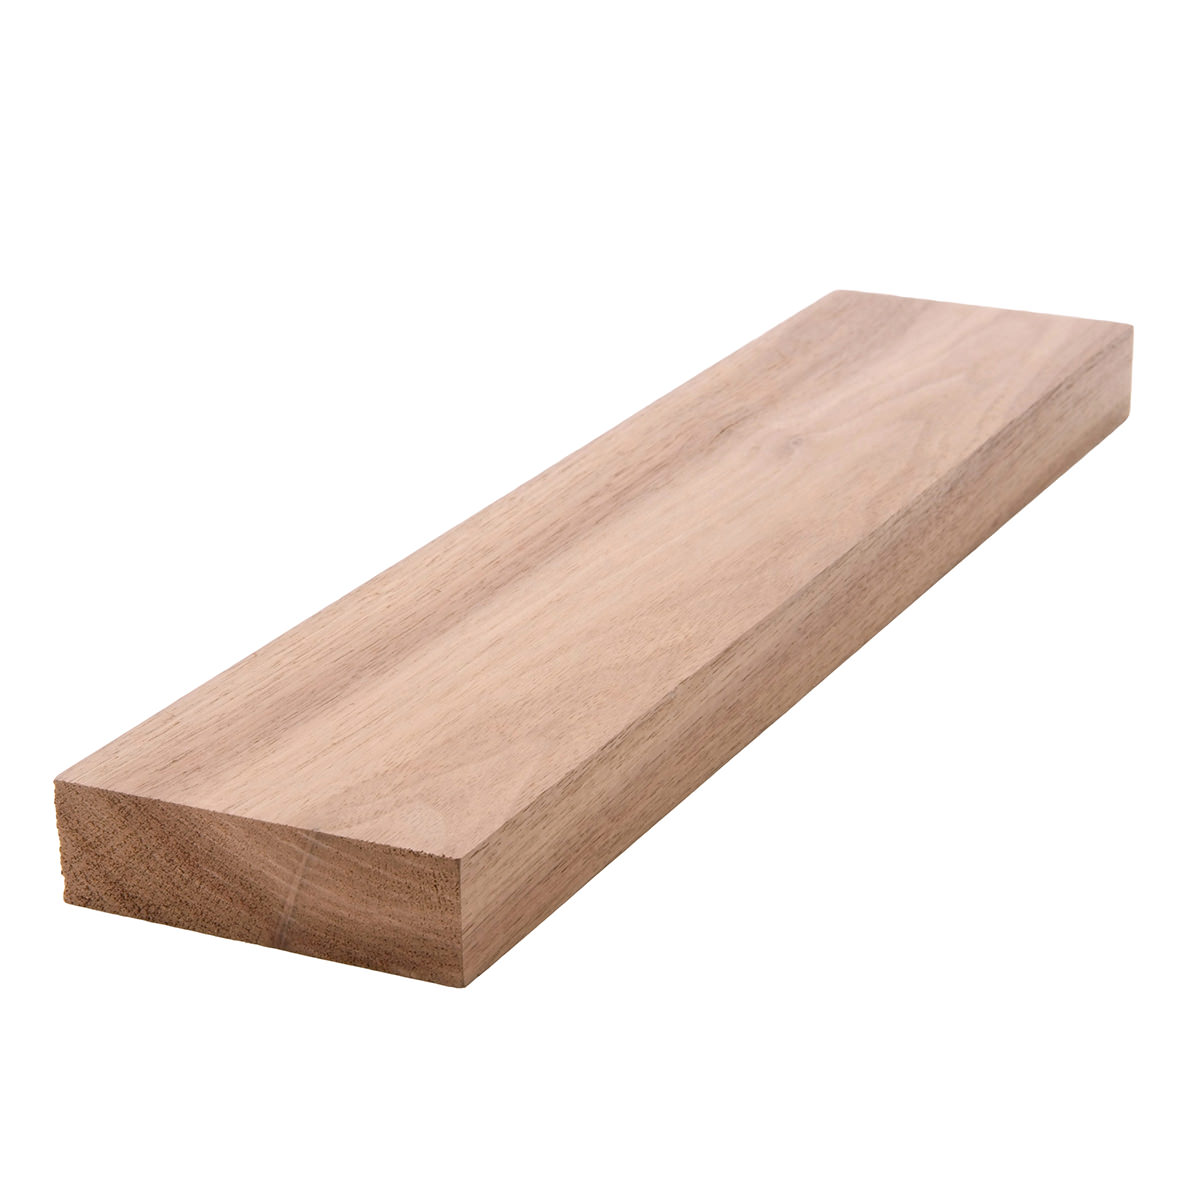 1x3 (3/4" x 21/2") Black Walnut S4S Lumber, Boards